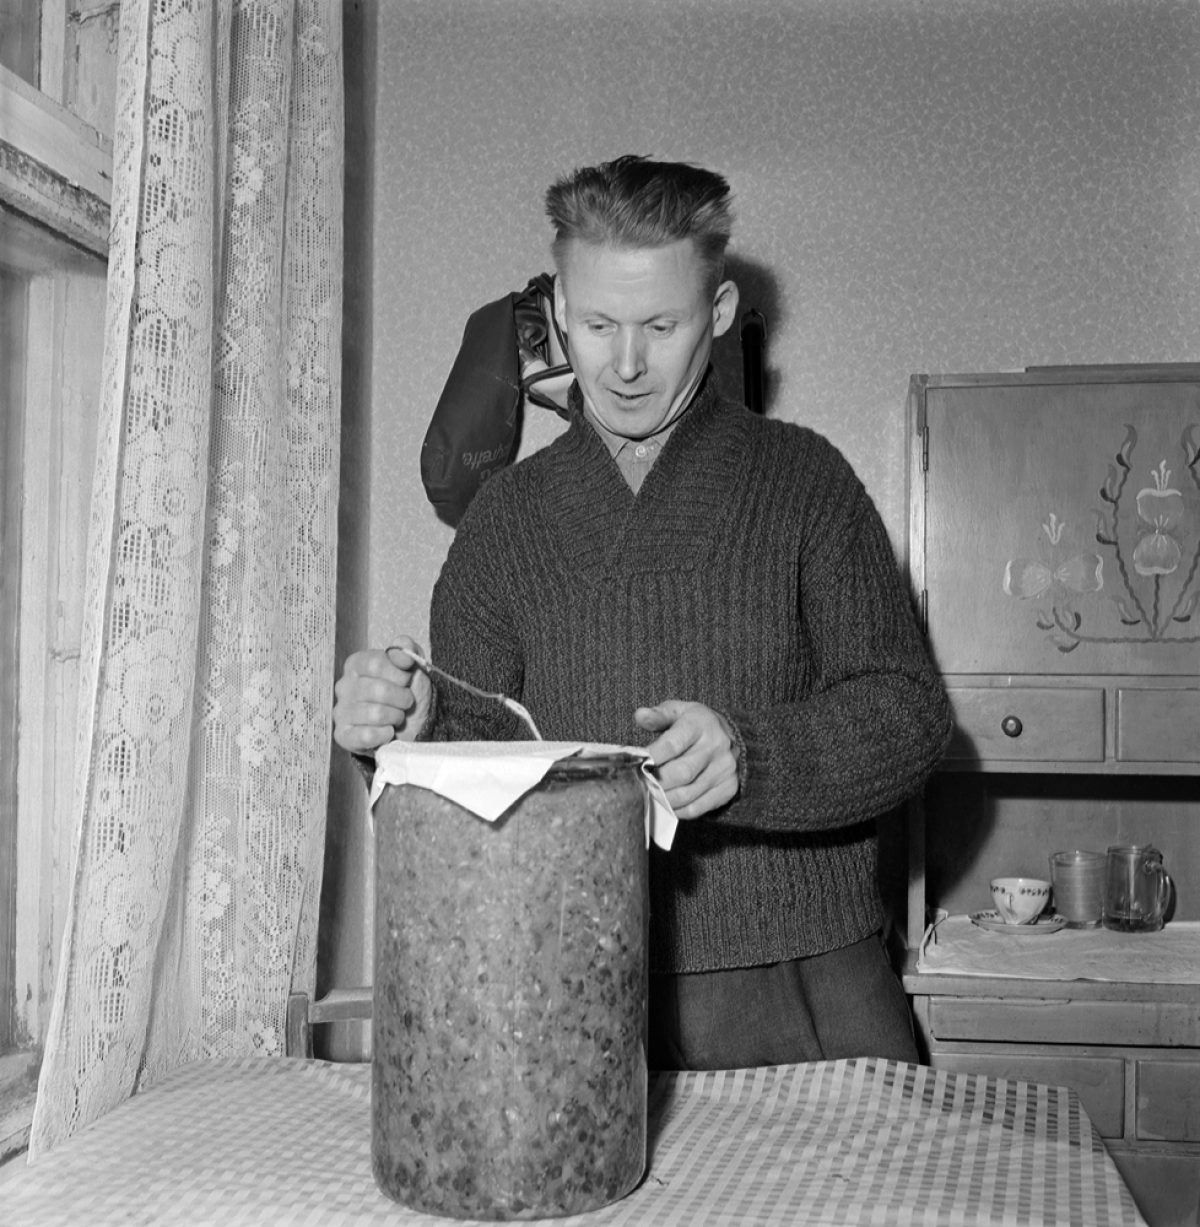 Johan Venninen esittelee talveksi säilömiään vihanneksia Hyvinkäällä 1959. Kuva: UA Saarinen / JOKA / Museovirasto